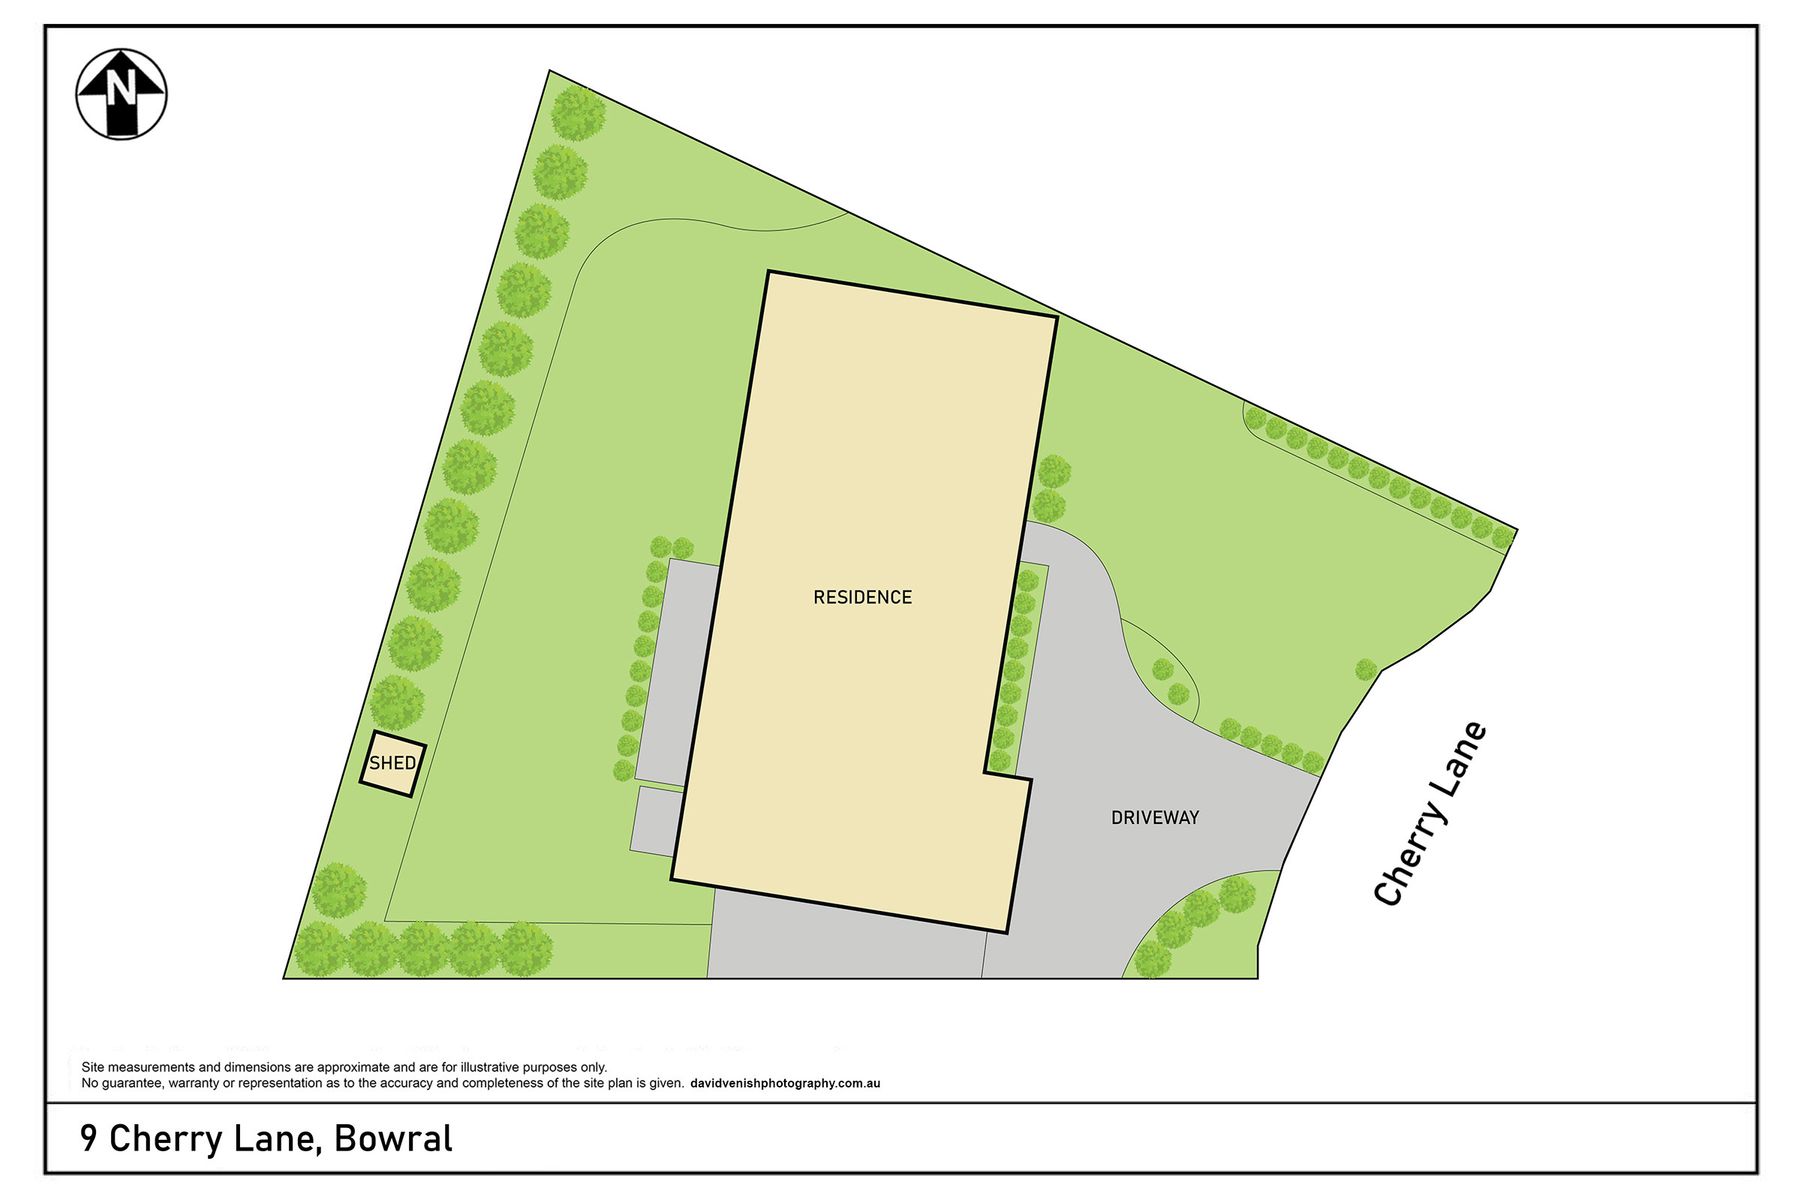 9 Cherry Lane, Bowral   Site Plan